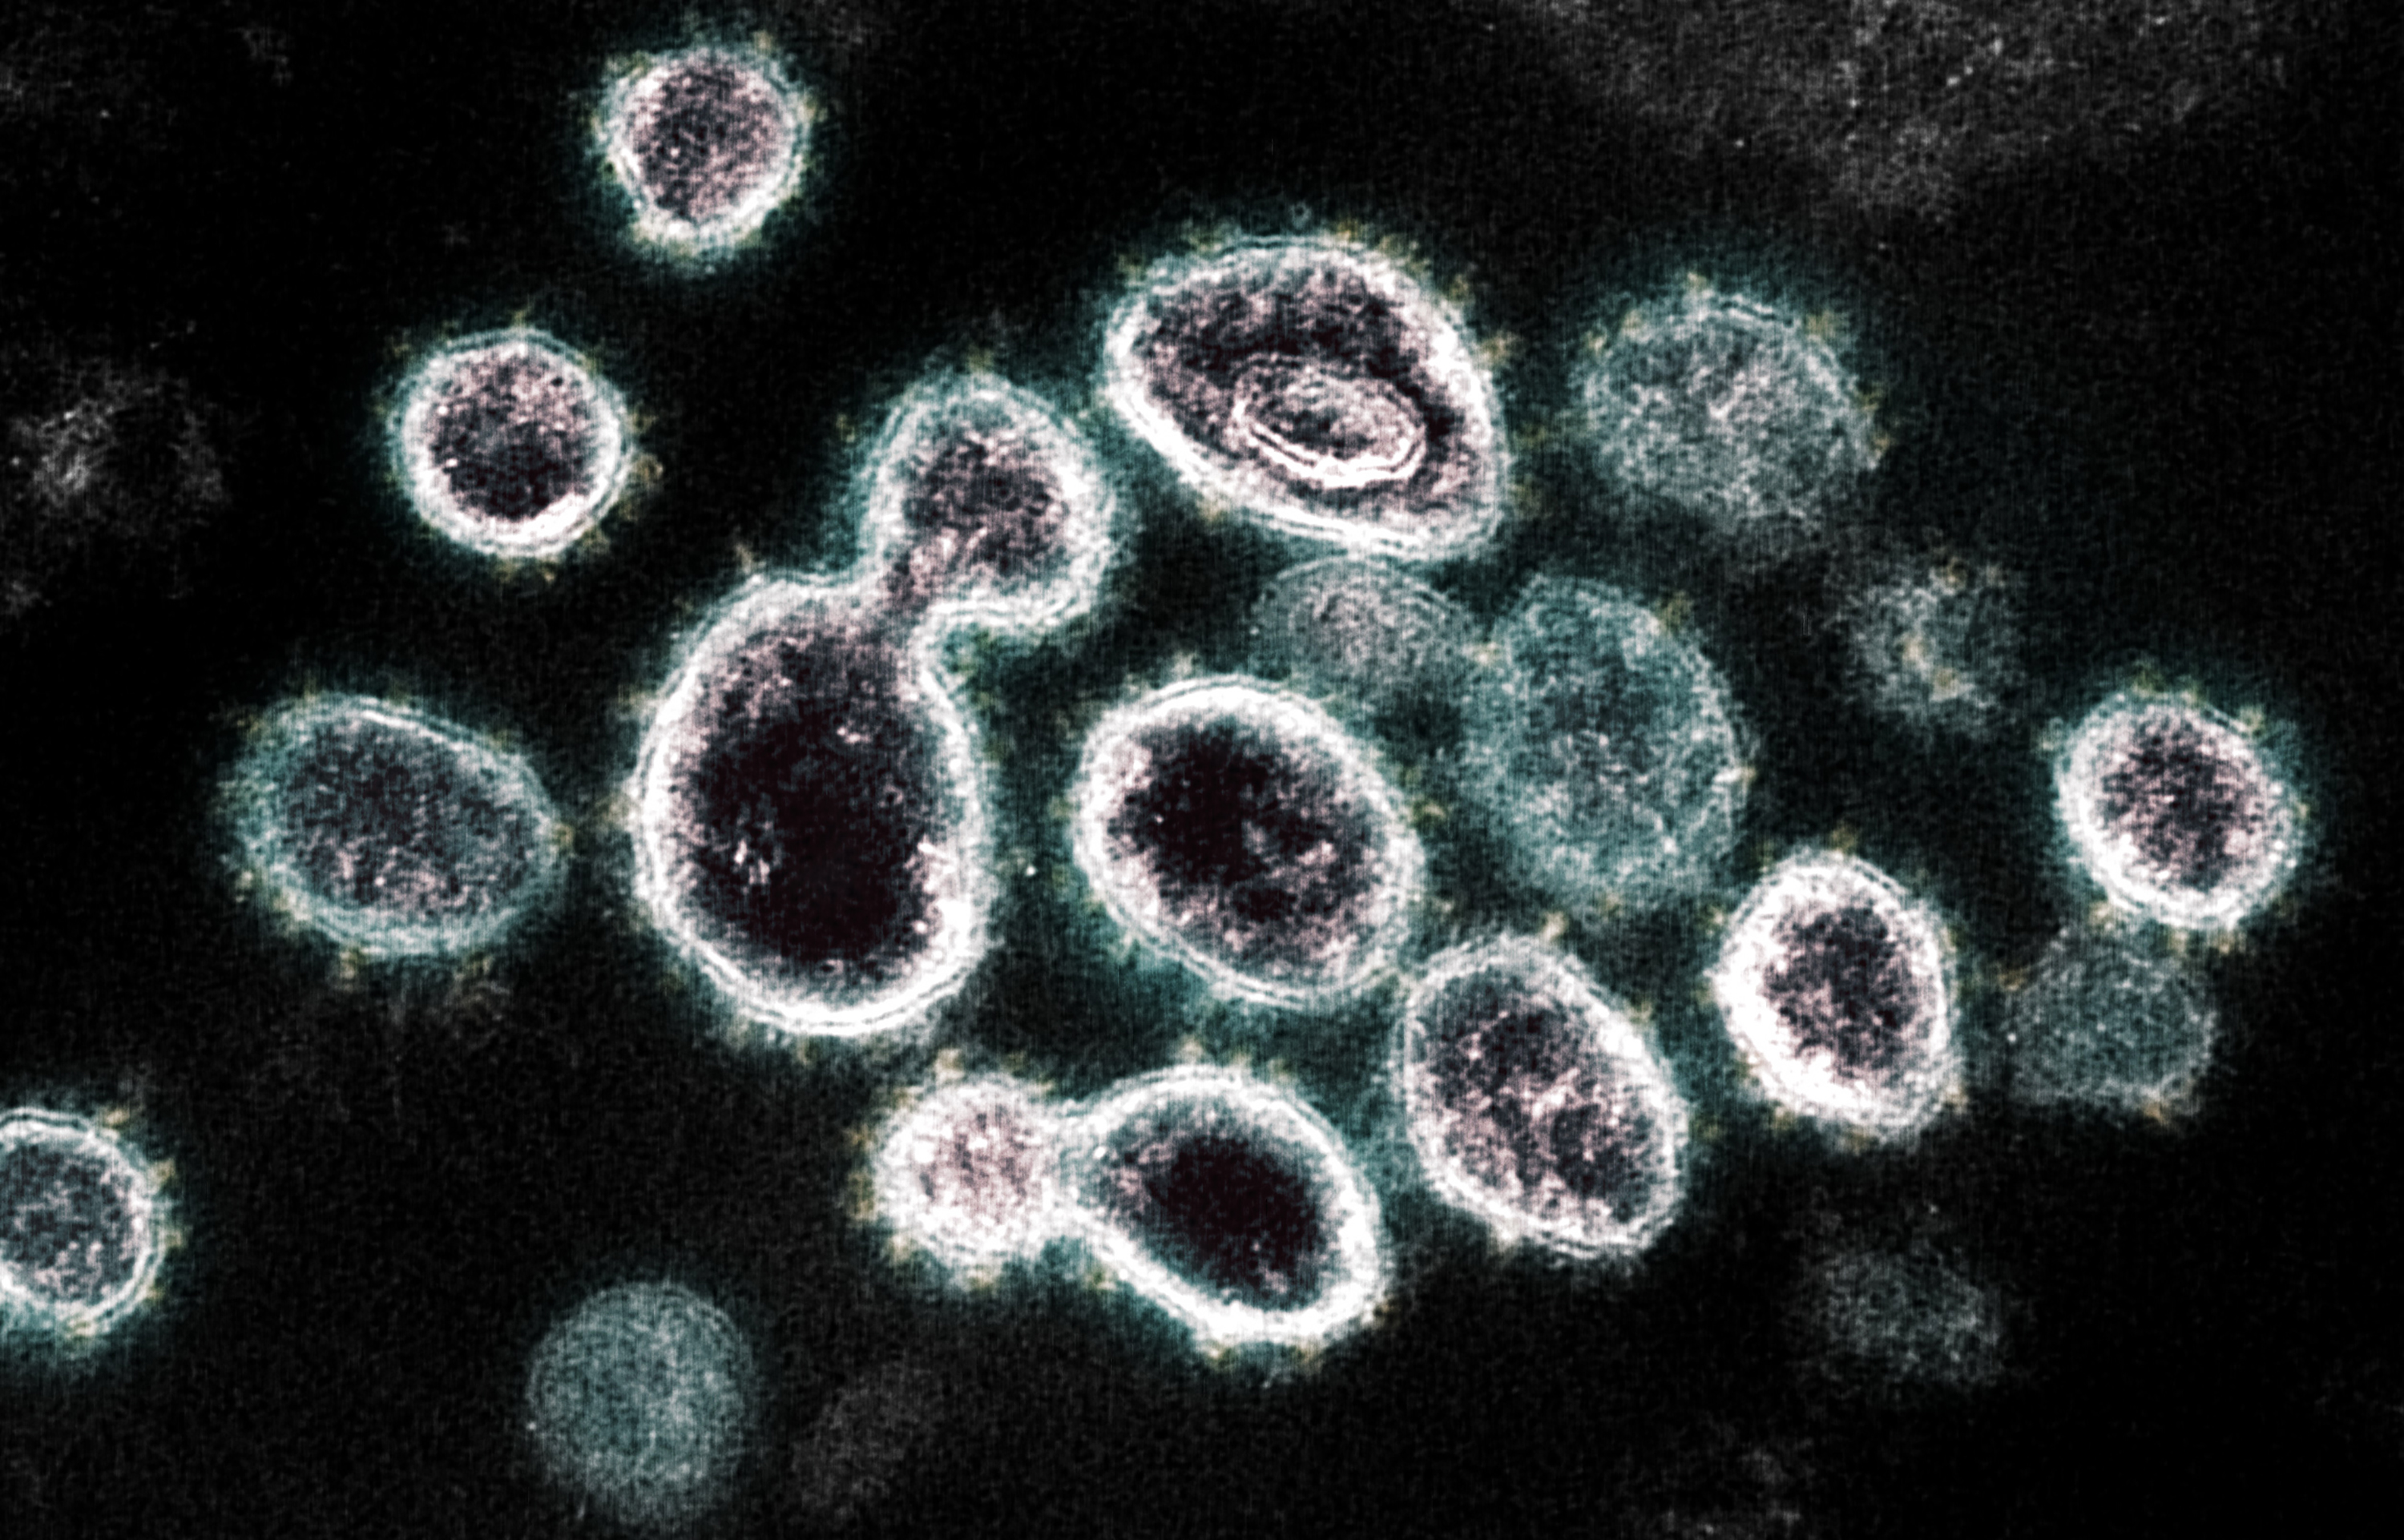 Imagen de un microscopio electrónico, proporcionada por el Instituto Nacional de Alergias y Enfermedades Infecciosas, que muestra el SARS-CoV-2, el virus que causa la COVID-19, aislado de un paciente en Estados Unidos. (Cortesía de NIAID para The New York Times)

